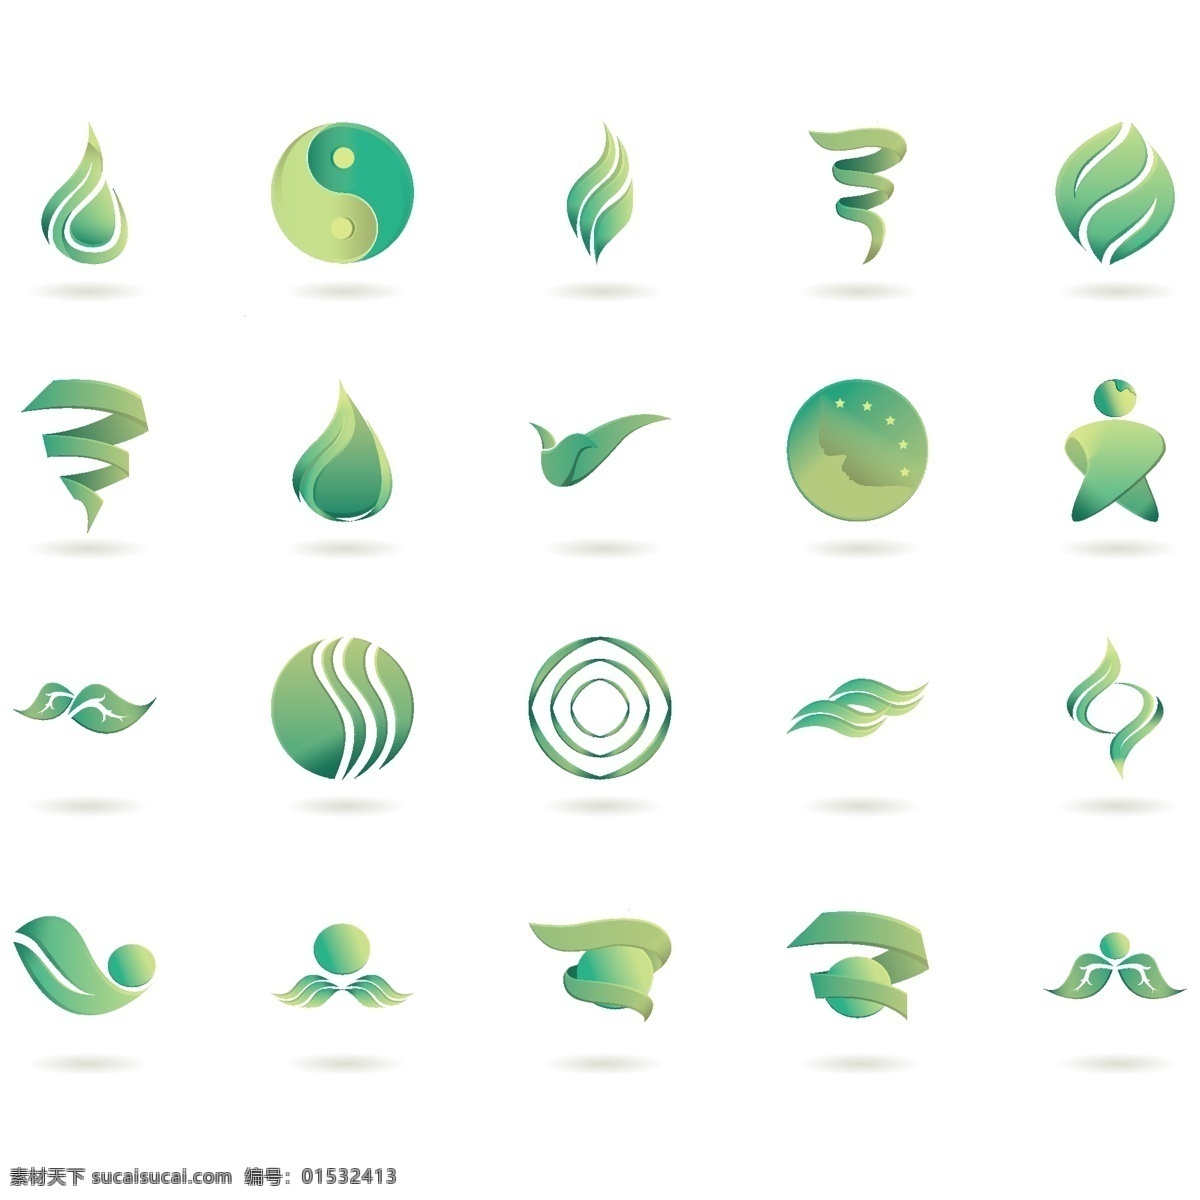 绿色农业 环保 图标 标志 logo 绿色标志 绿色环保标志 绿色标志设计 绿色生态标志 绿色健康标志 绿色环保 农业logo 生态农业 白色